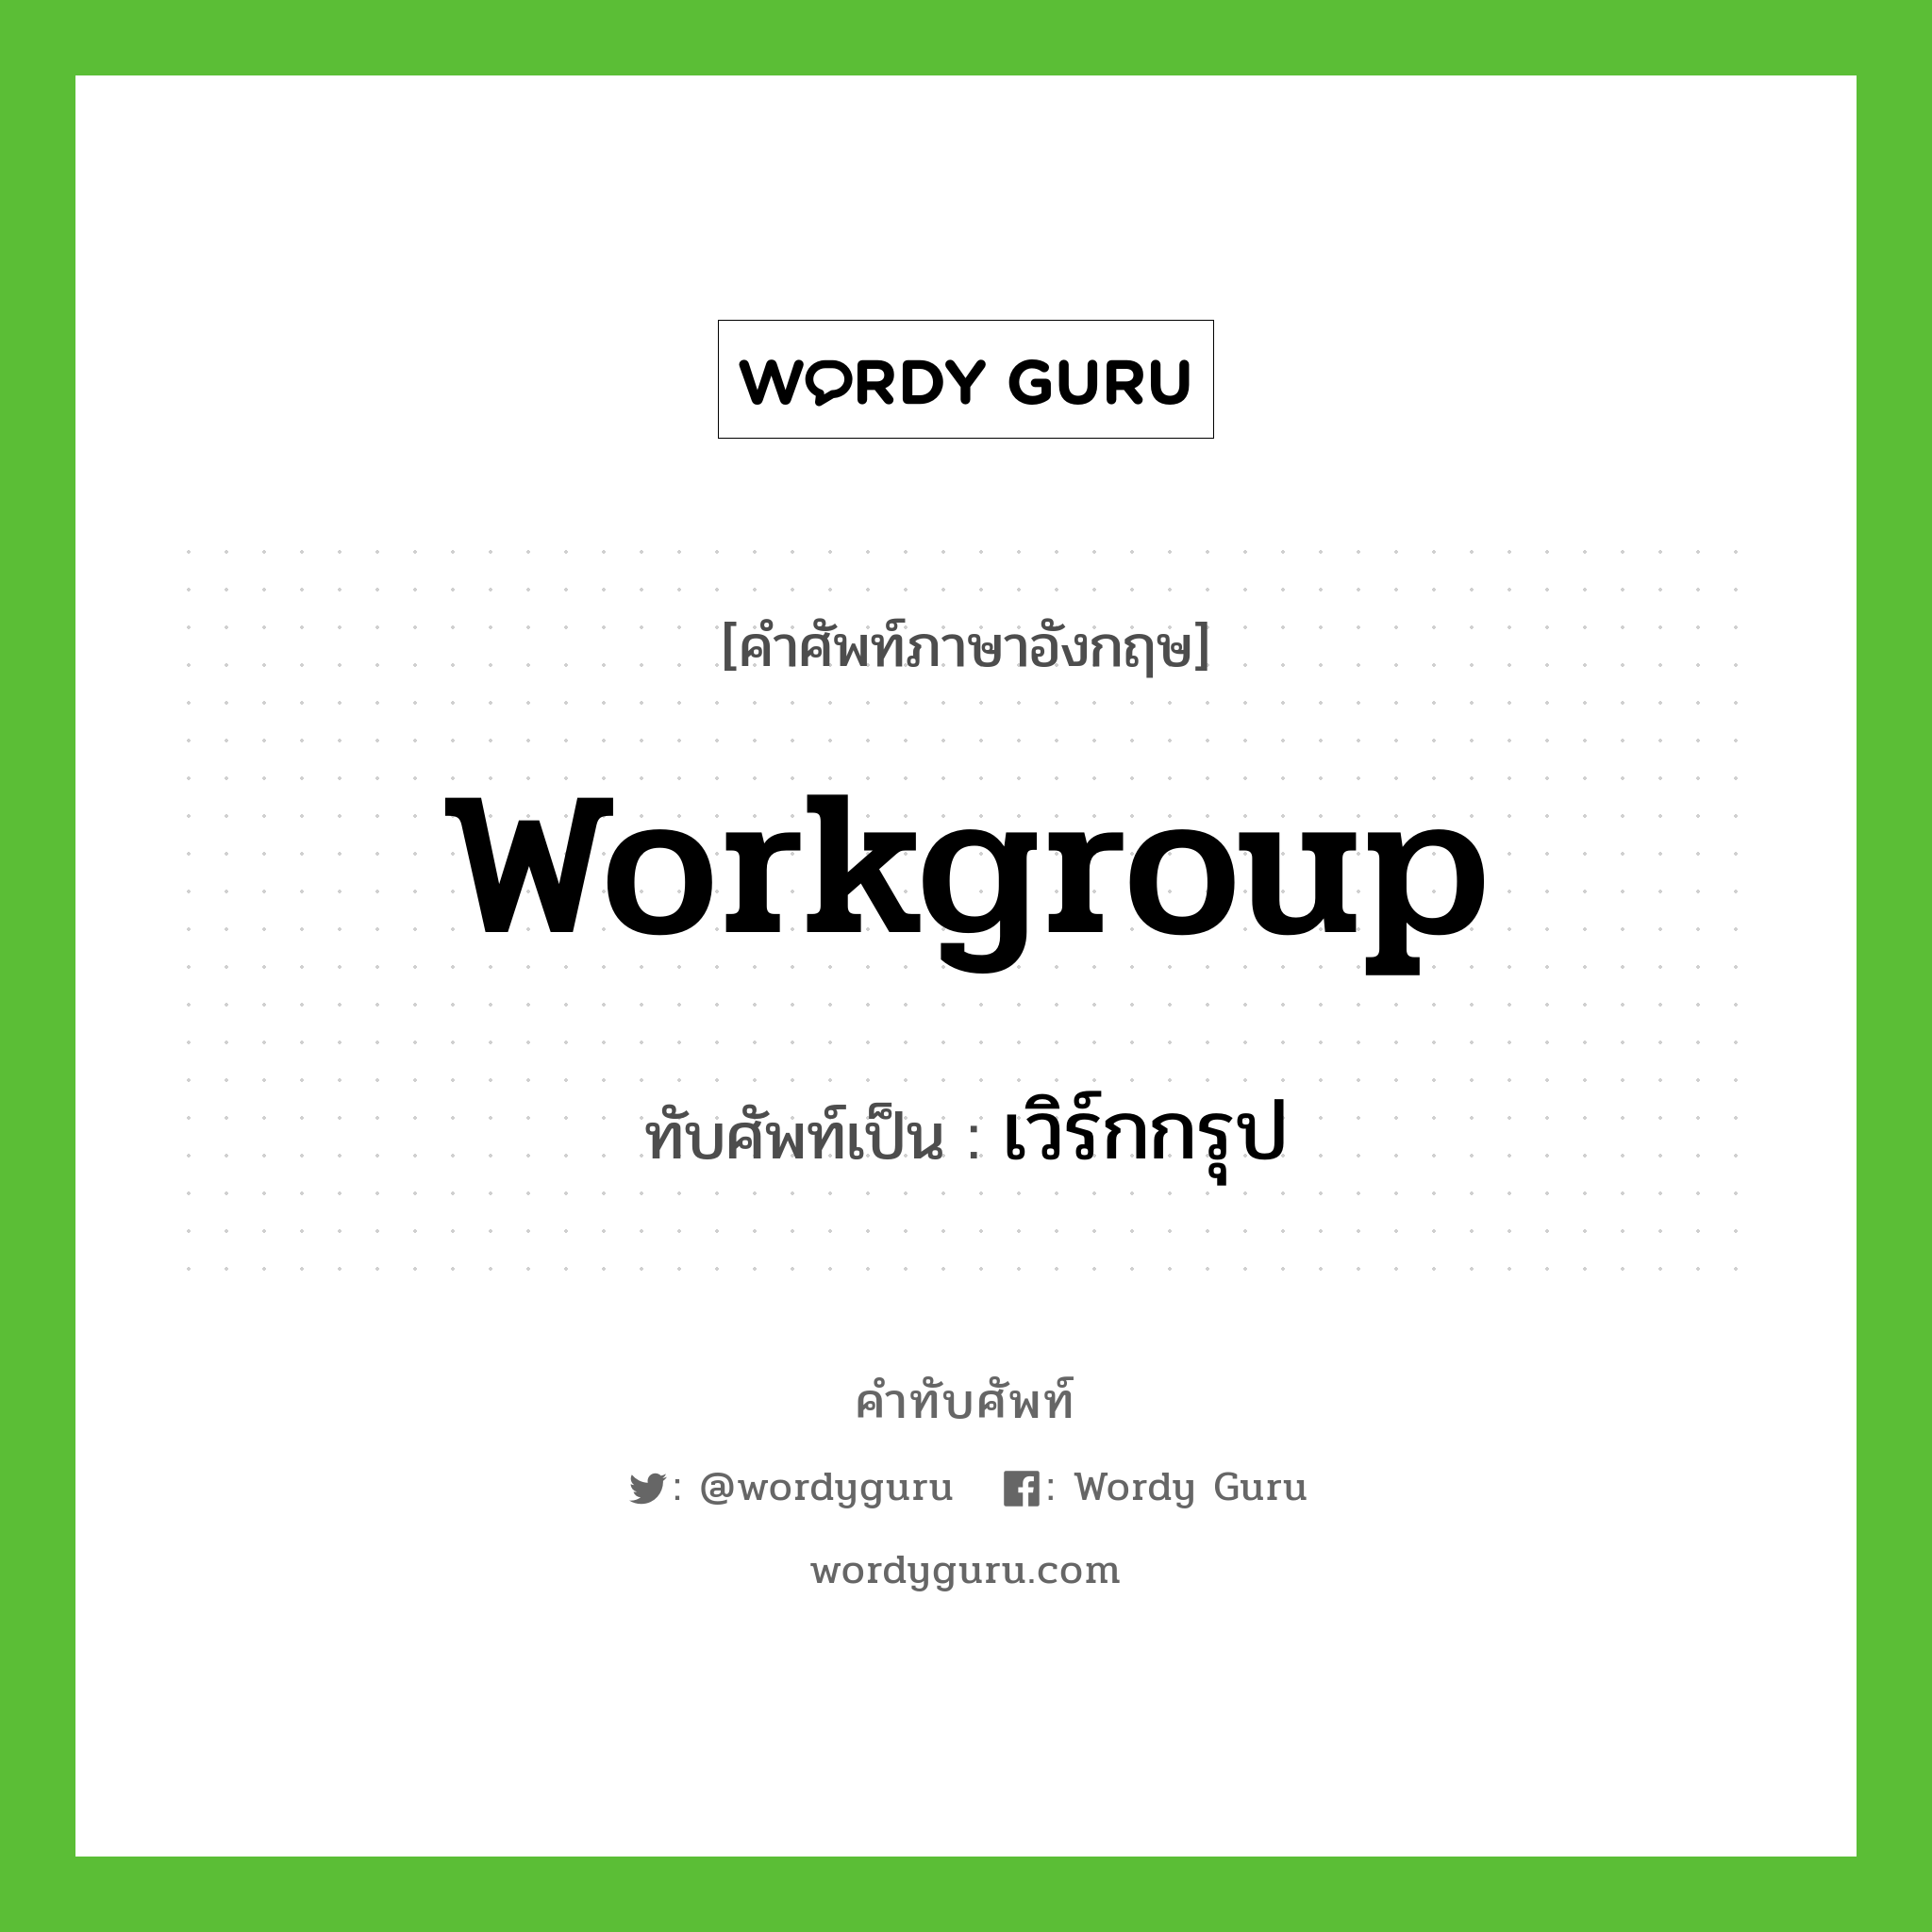 workgroup เขียนเป็นคำไทยว่าอะไร?, คำศัพท์ภาษาอังกฤษ workgroup ทับศัพท์เป็น เวิร์กกรุป